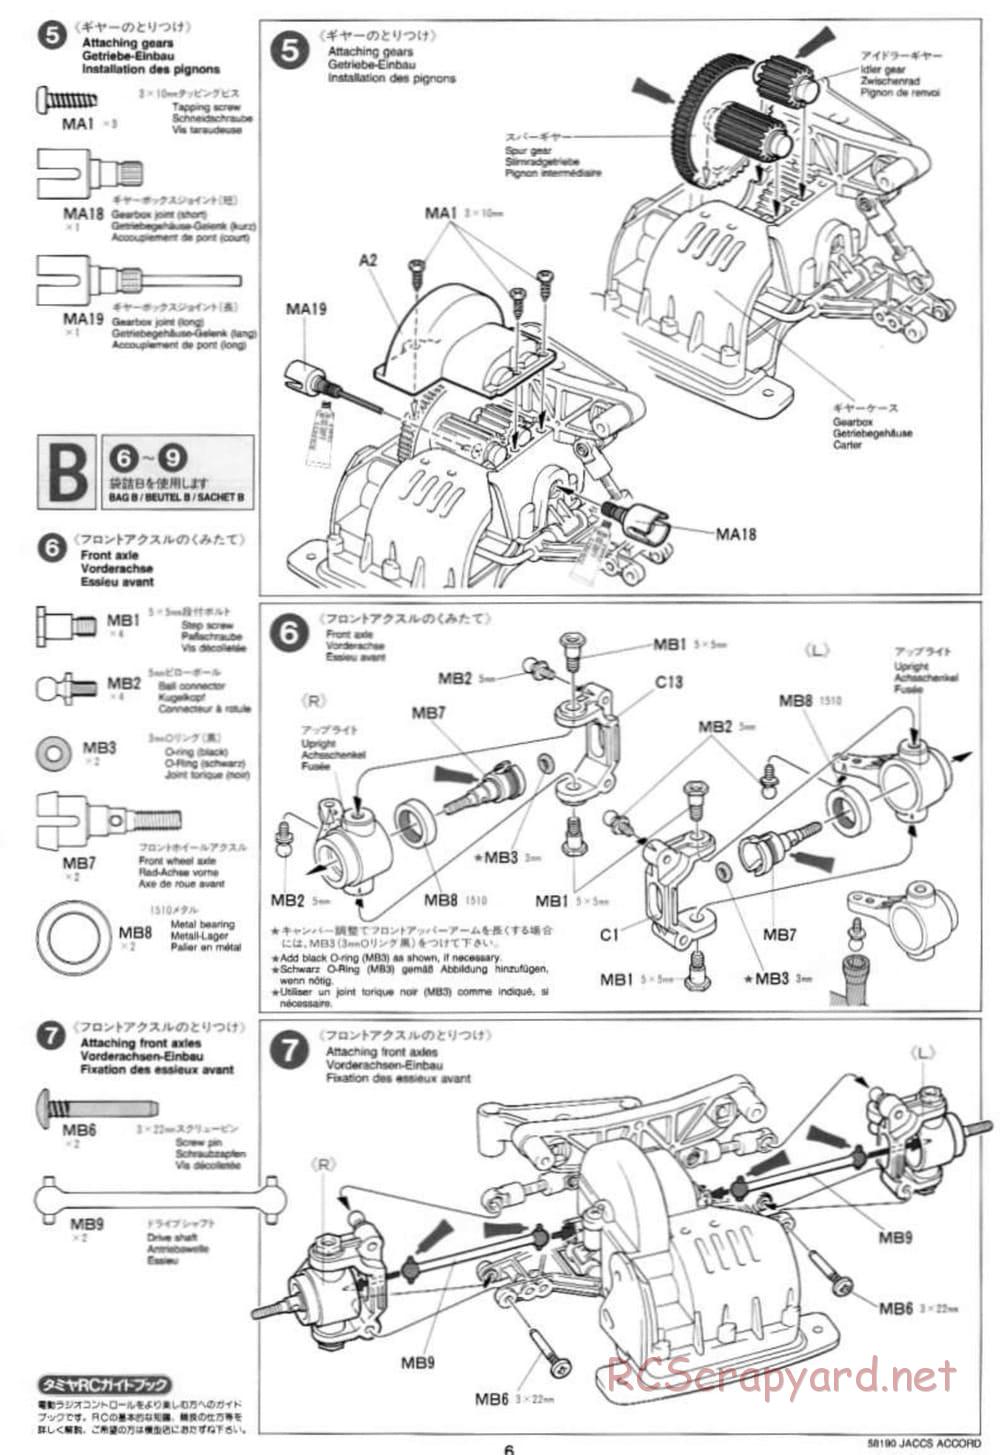 Tamiya - JACCS Honda Accord - FF-01 Chassis - Manual - Page 6